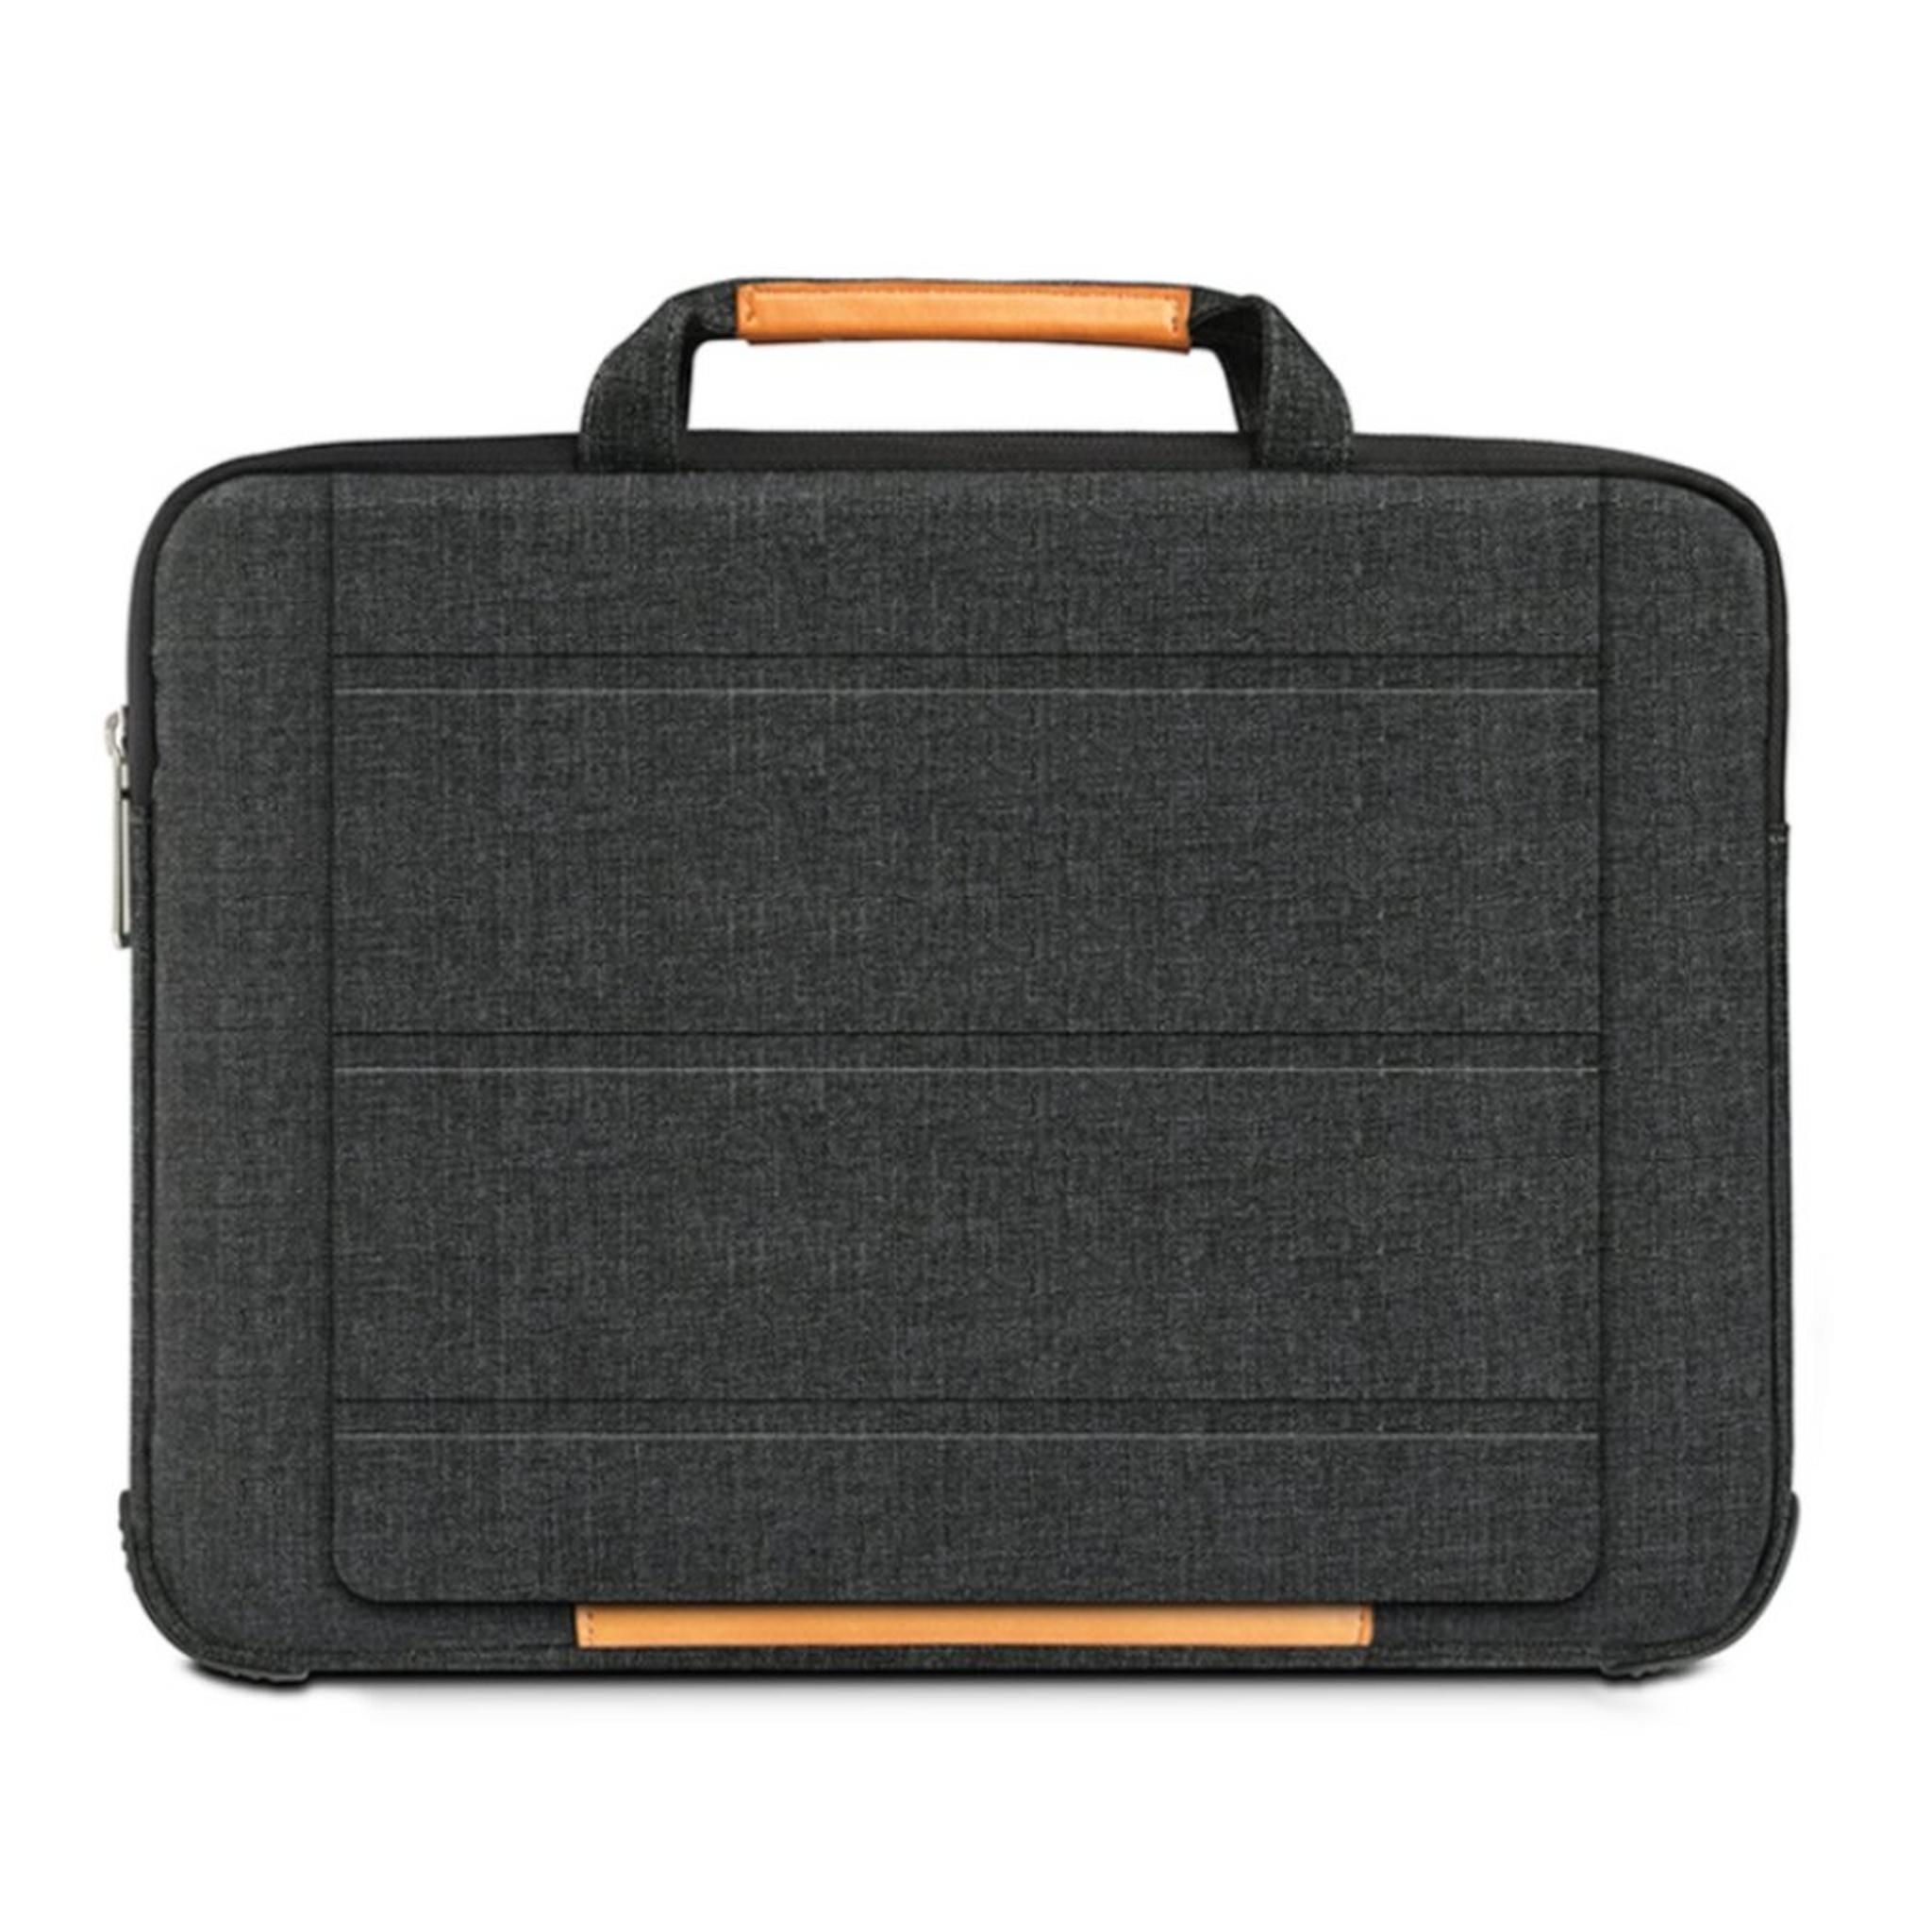 حقيبة اللابتوب الذكية لماك بوك آير بحجم 13.3 بوصة من ويو - أسود